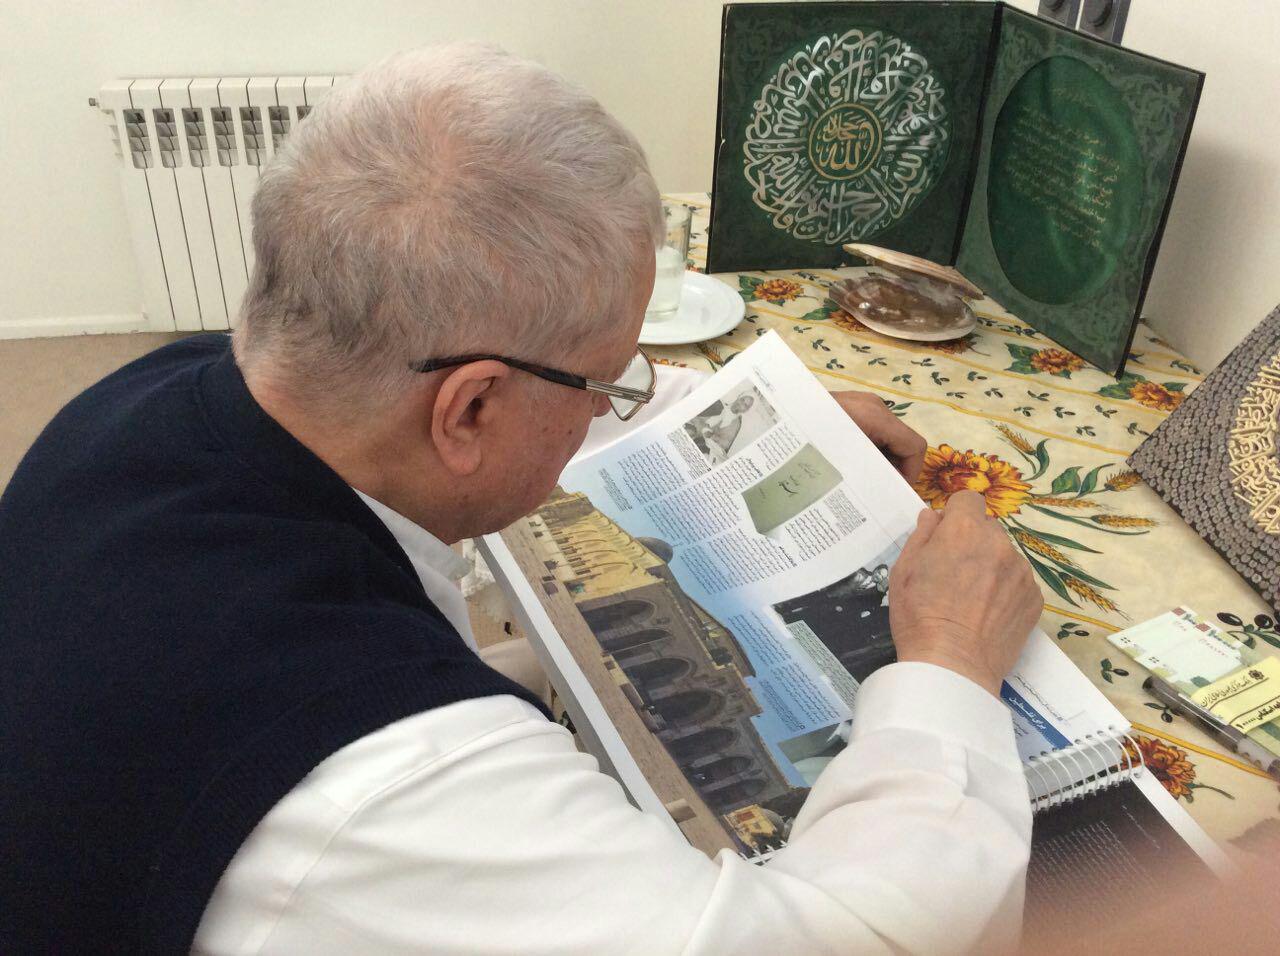 هاشمی رفسنجانی در تعطیلات چه کتابی می خواند؟ +عکس